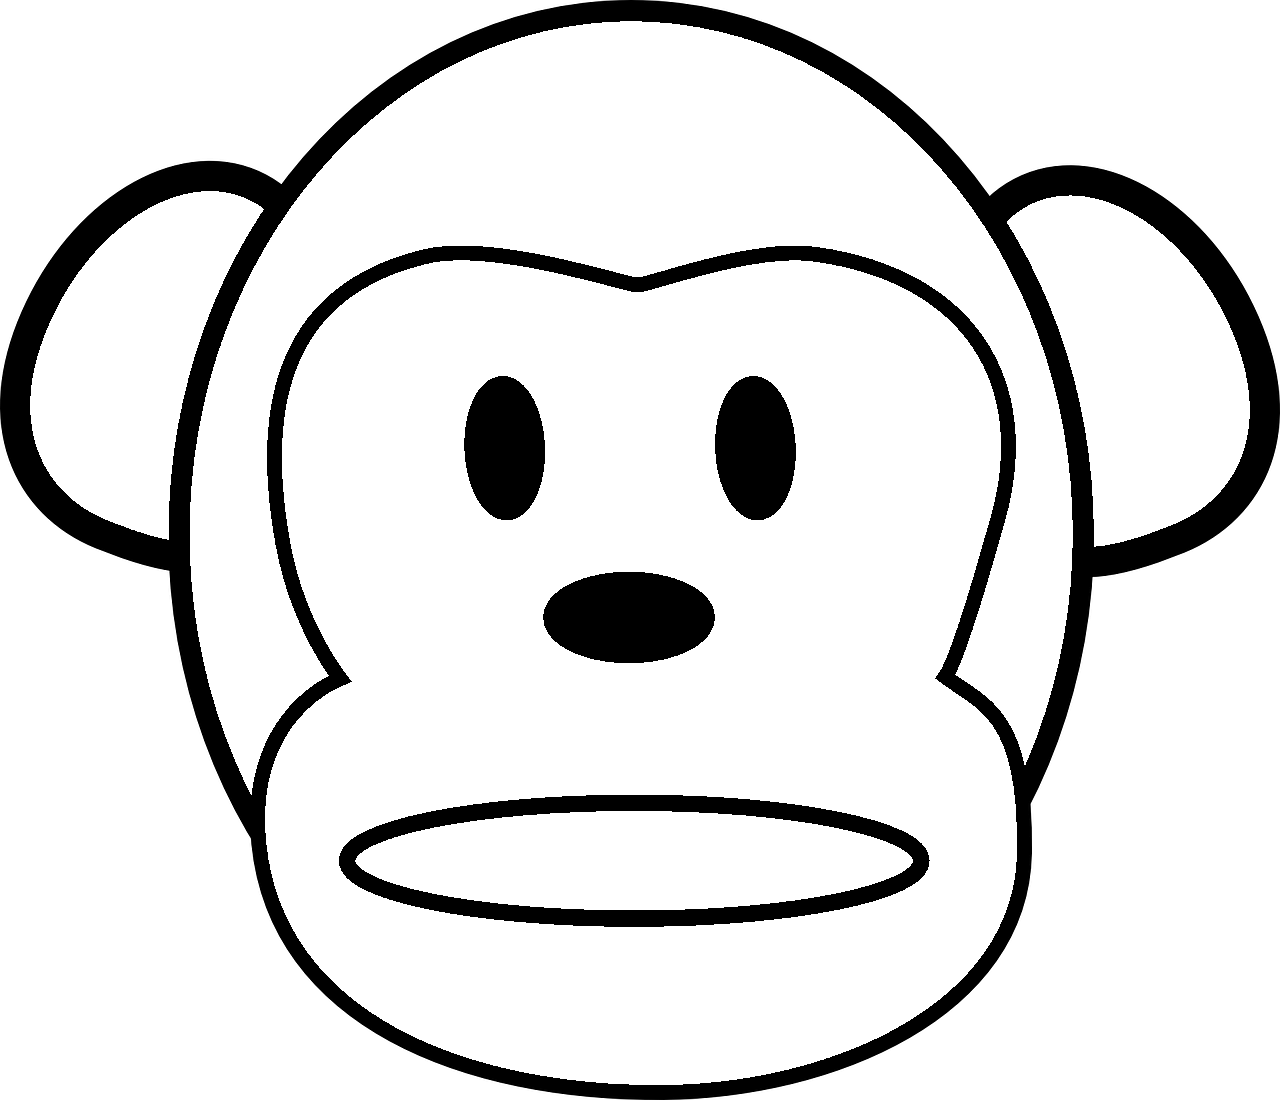 Dibujo para colorear de un mono